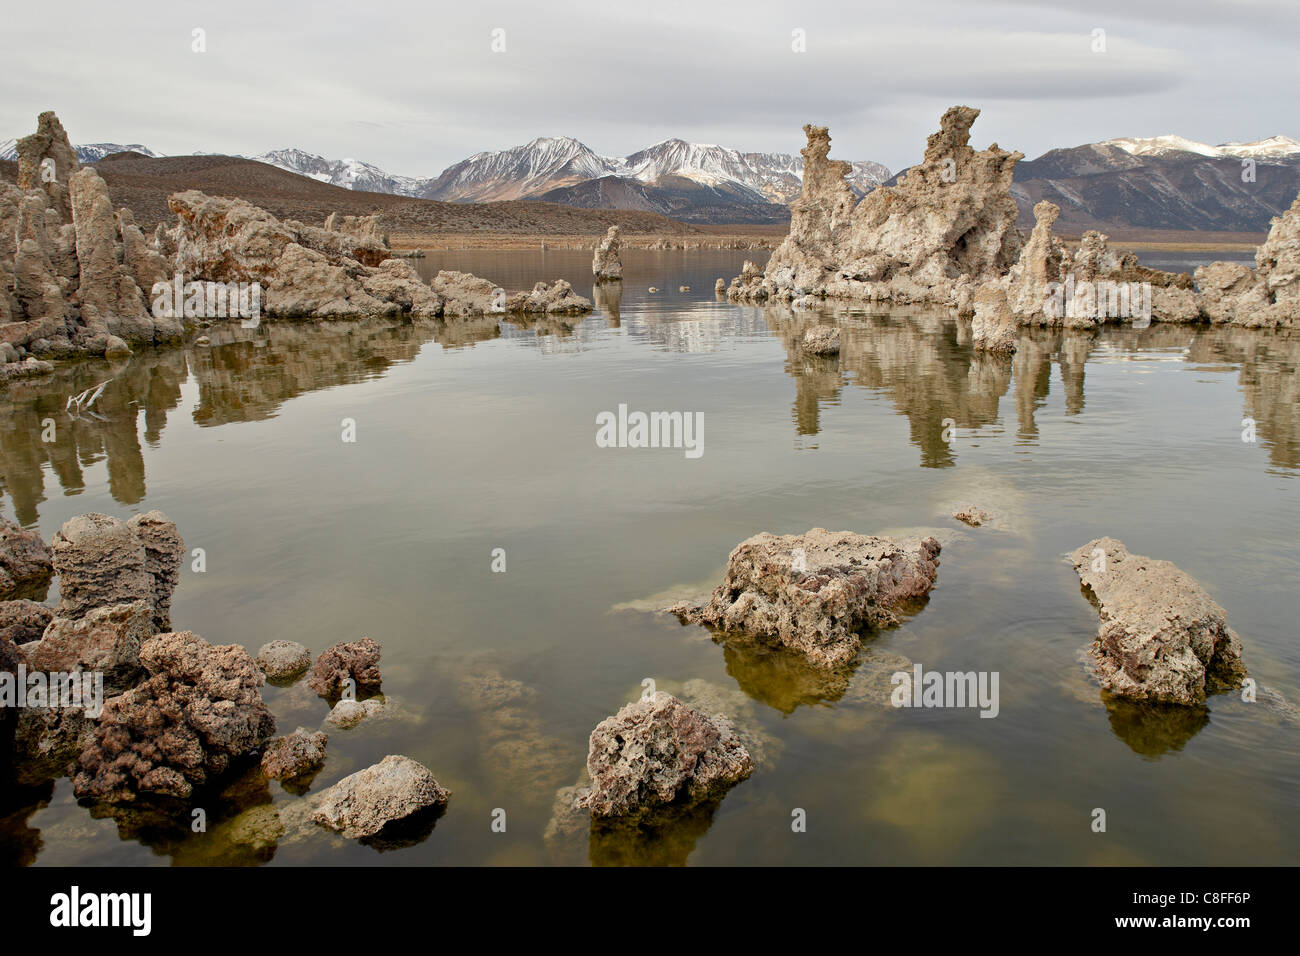 Formazioni di tufo, Mono Lake, California, Stati Uniti d'America Foto Stock